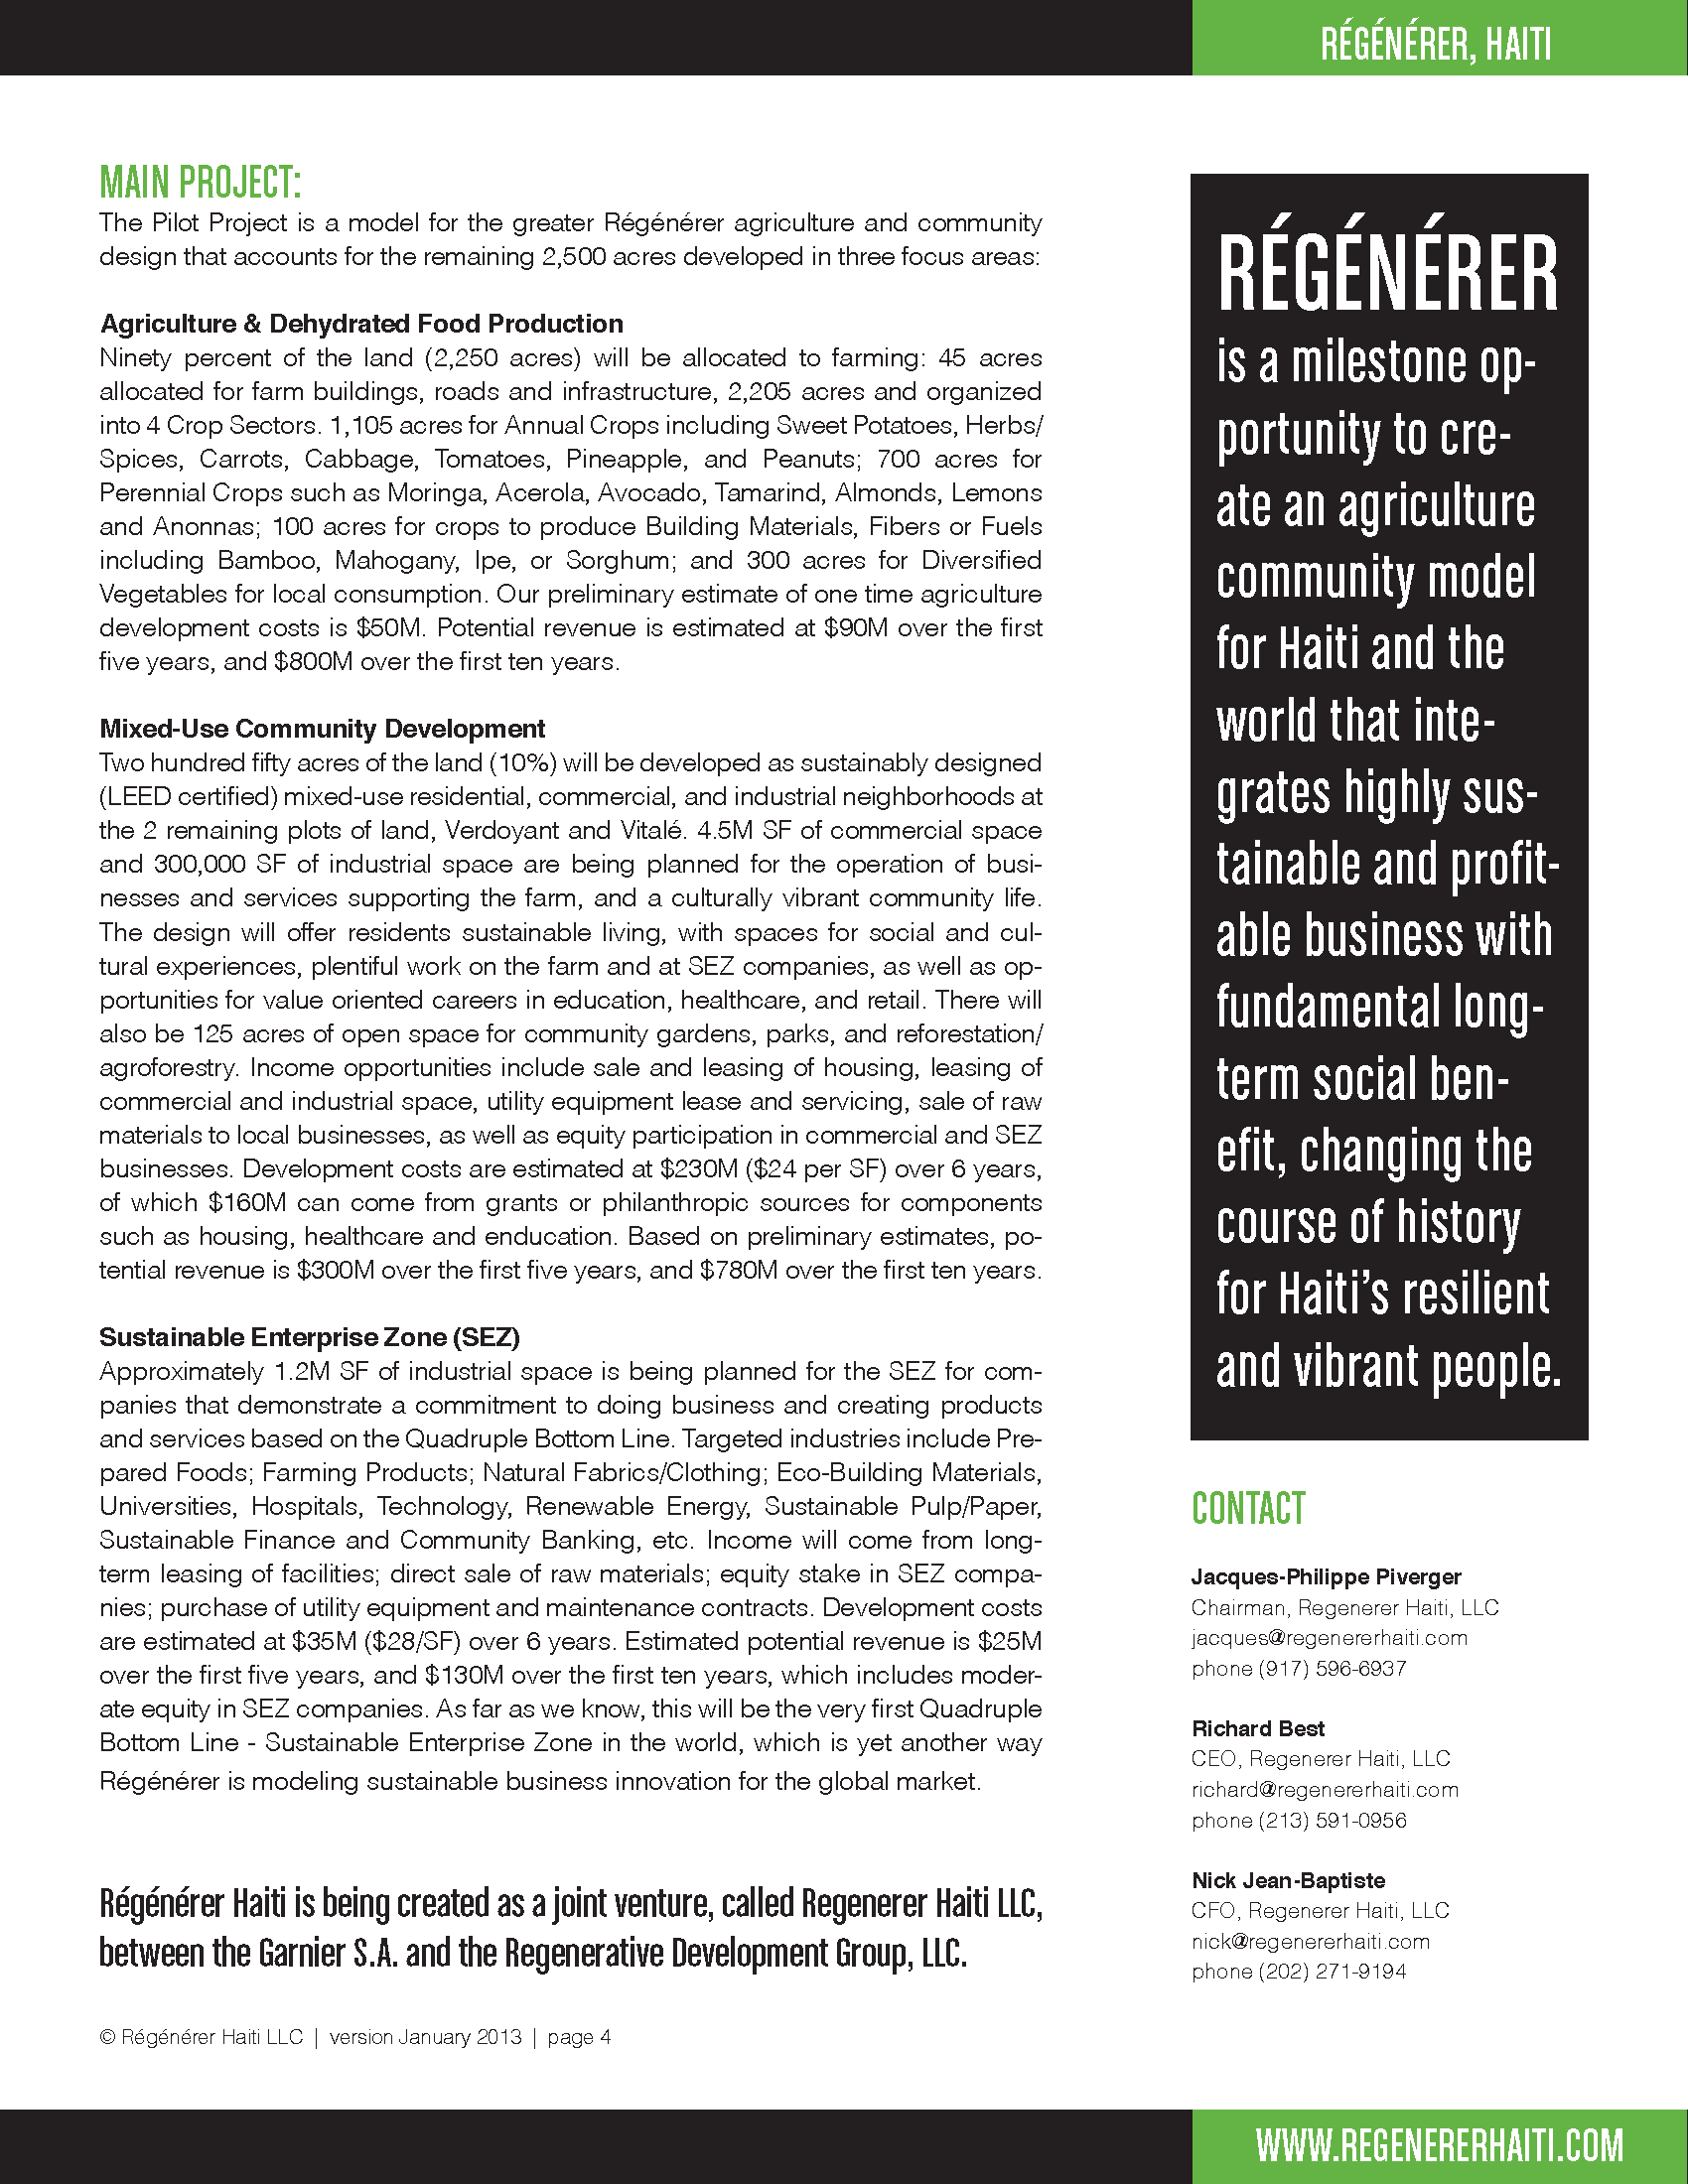 RegenererHaitiPILOTPROJECTBrochure-2500-Jan2013-v2_Page_4.png